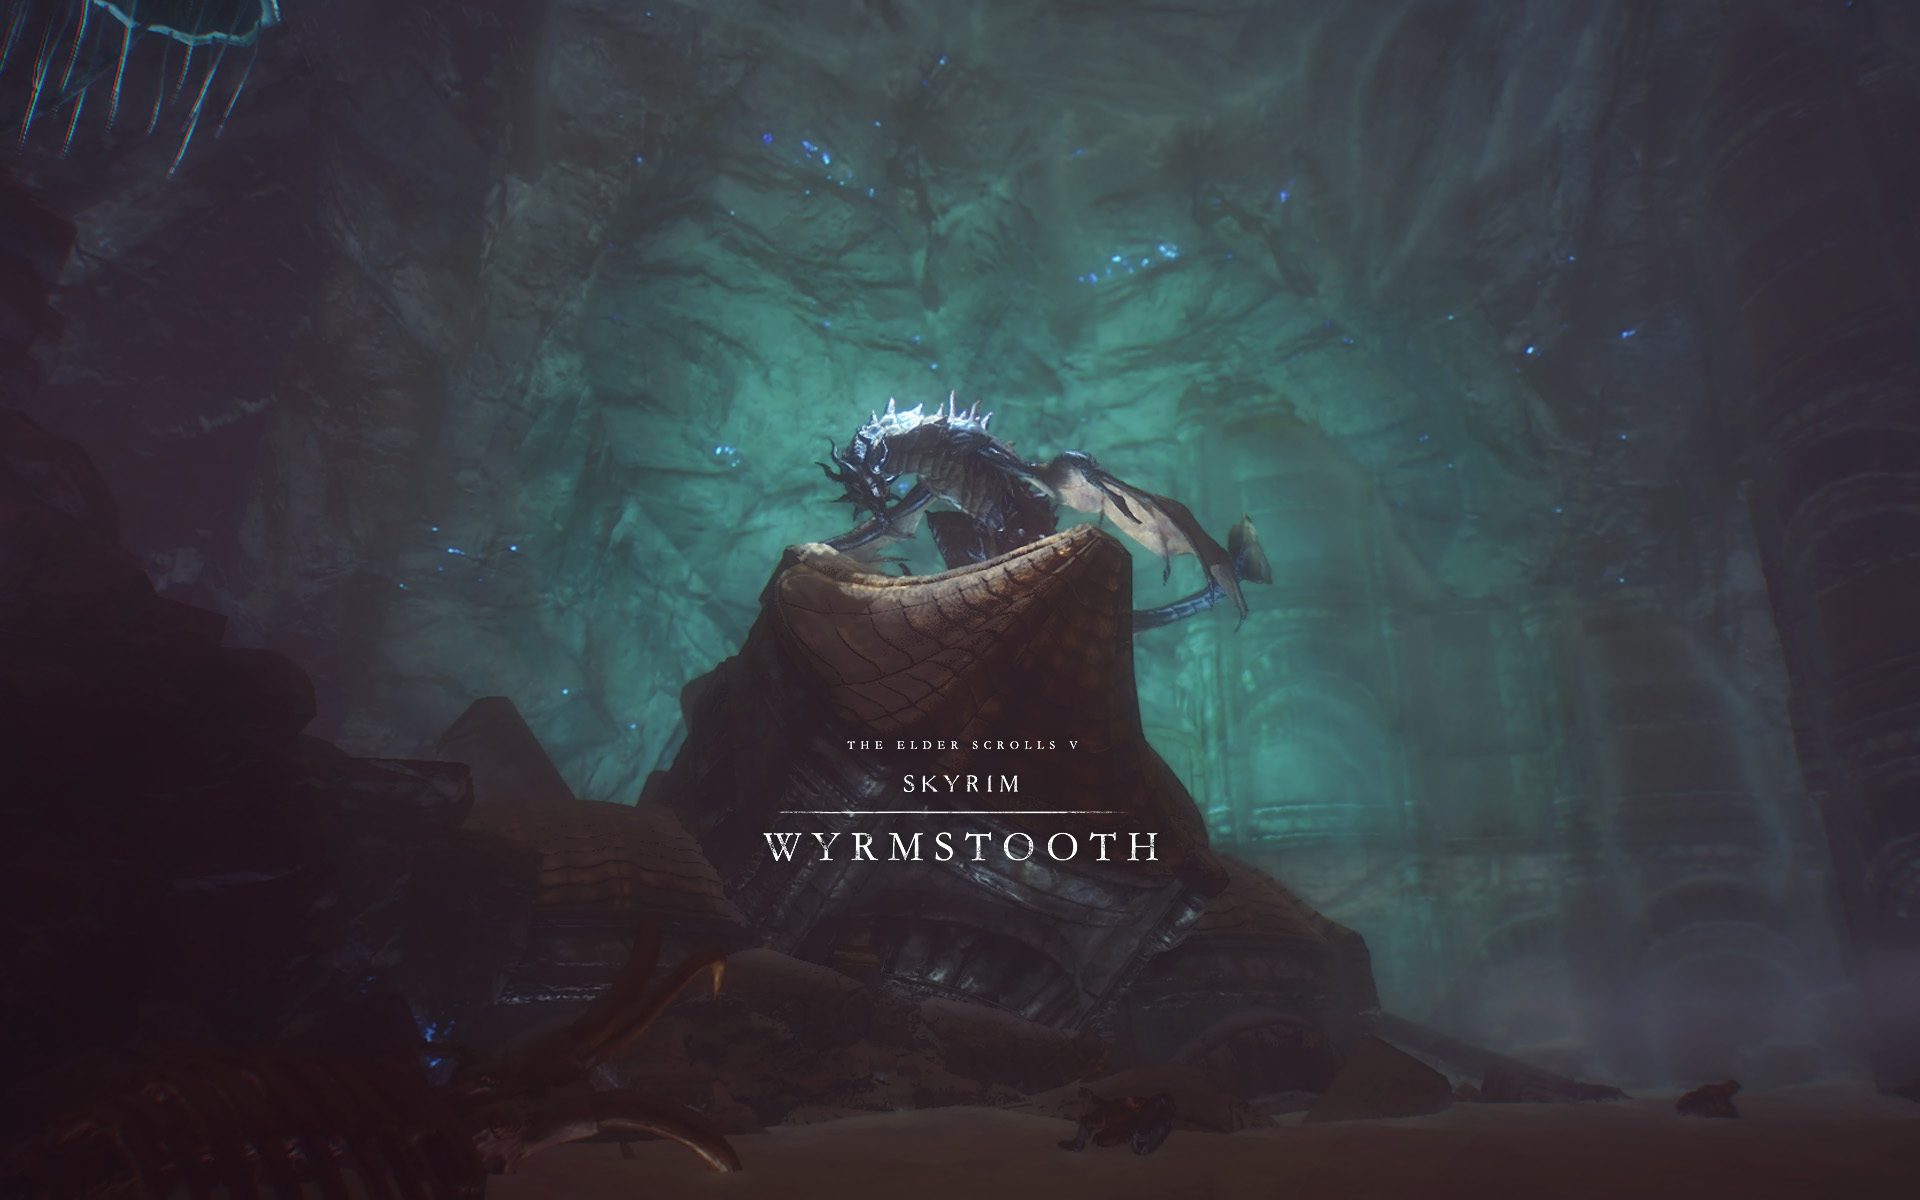 The Elder Scrolls V Skyrim: Wyrmstooth